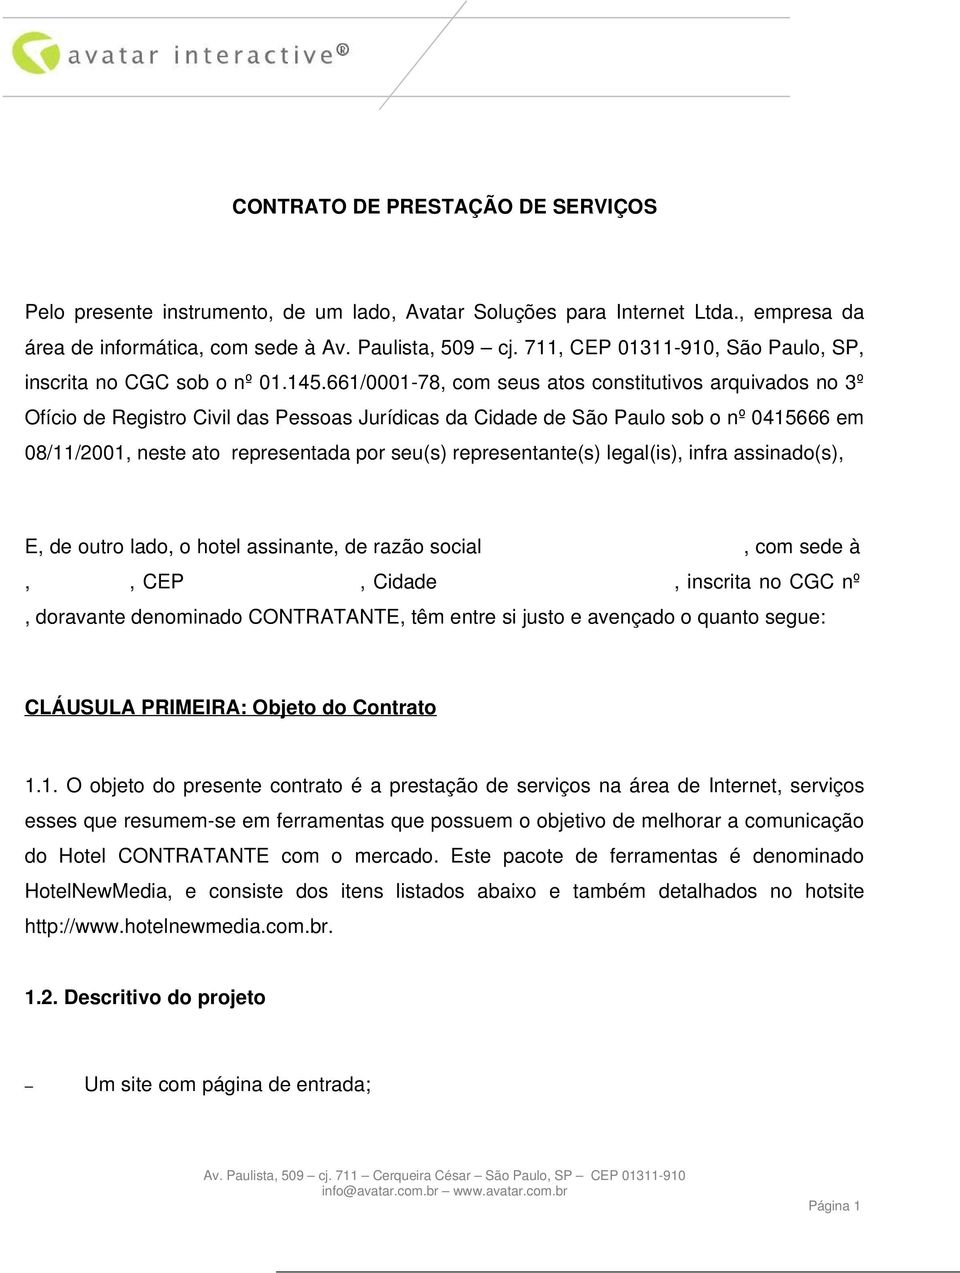 661/0001-78, com seus atos constitutivos arquivados no 3º Ofício de Registro Civil das Pessoas Jurídicas da Cidade de São Paulo sob o nº 0415666 em 08/11/2001, neste ato representada por seu(s)